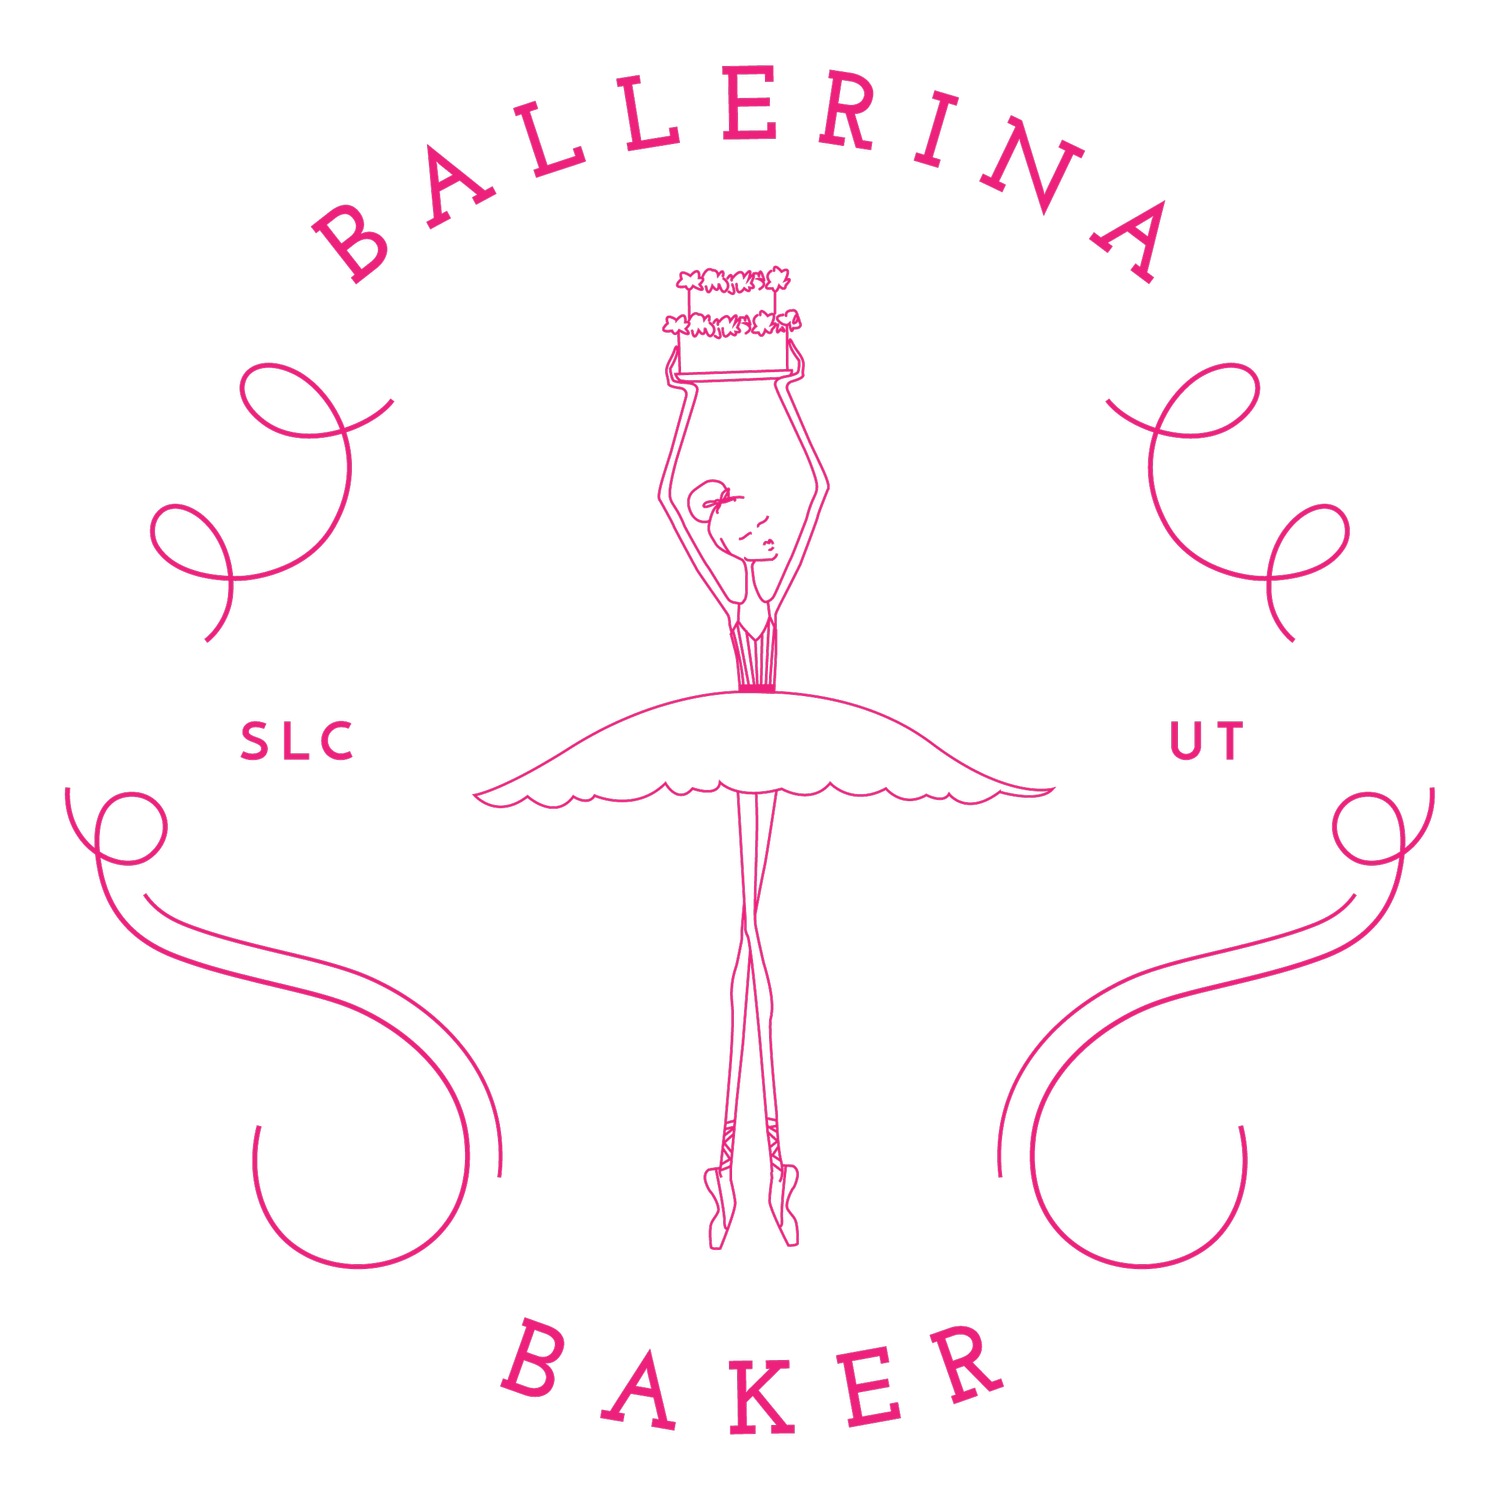 Ballerina Baker